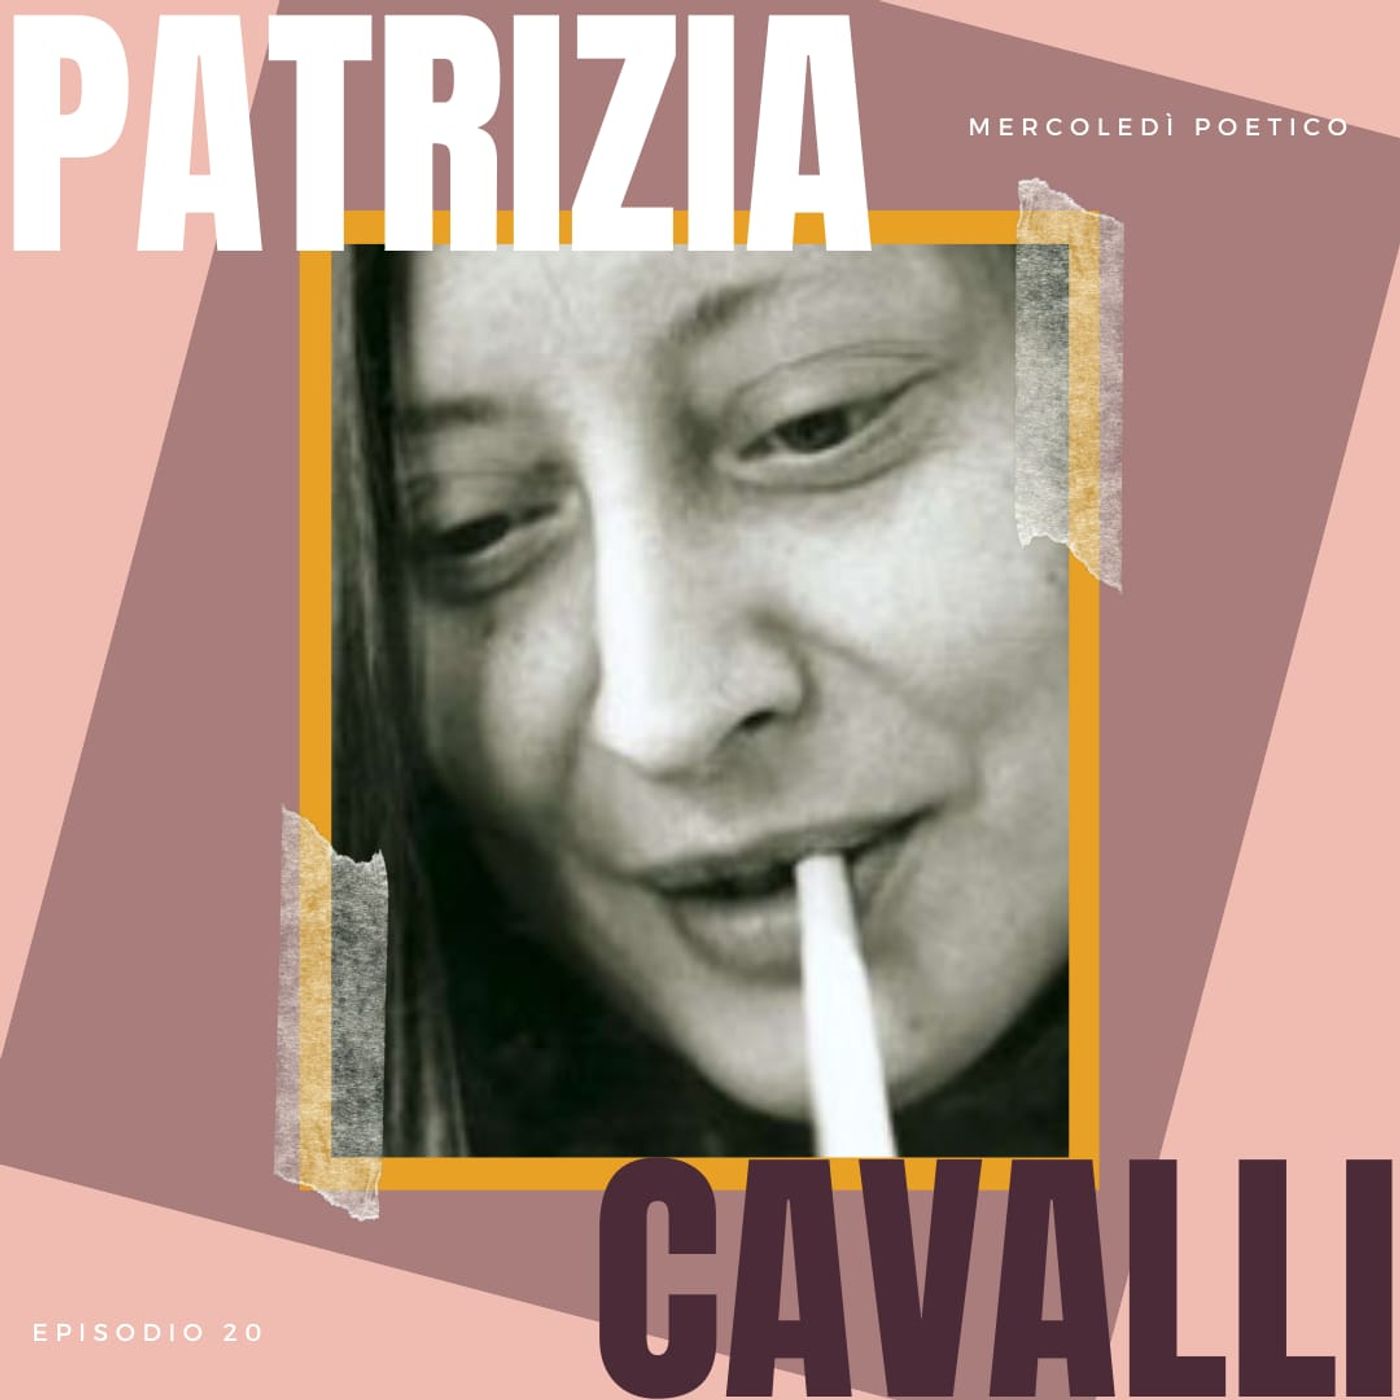 Mercoledì poetico - Ep. 20, Patrizia Cavalli